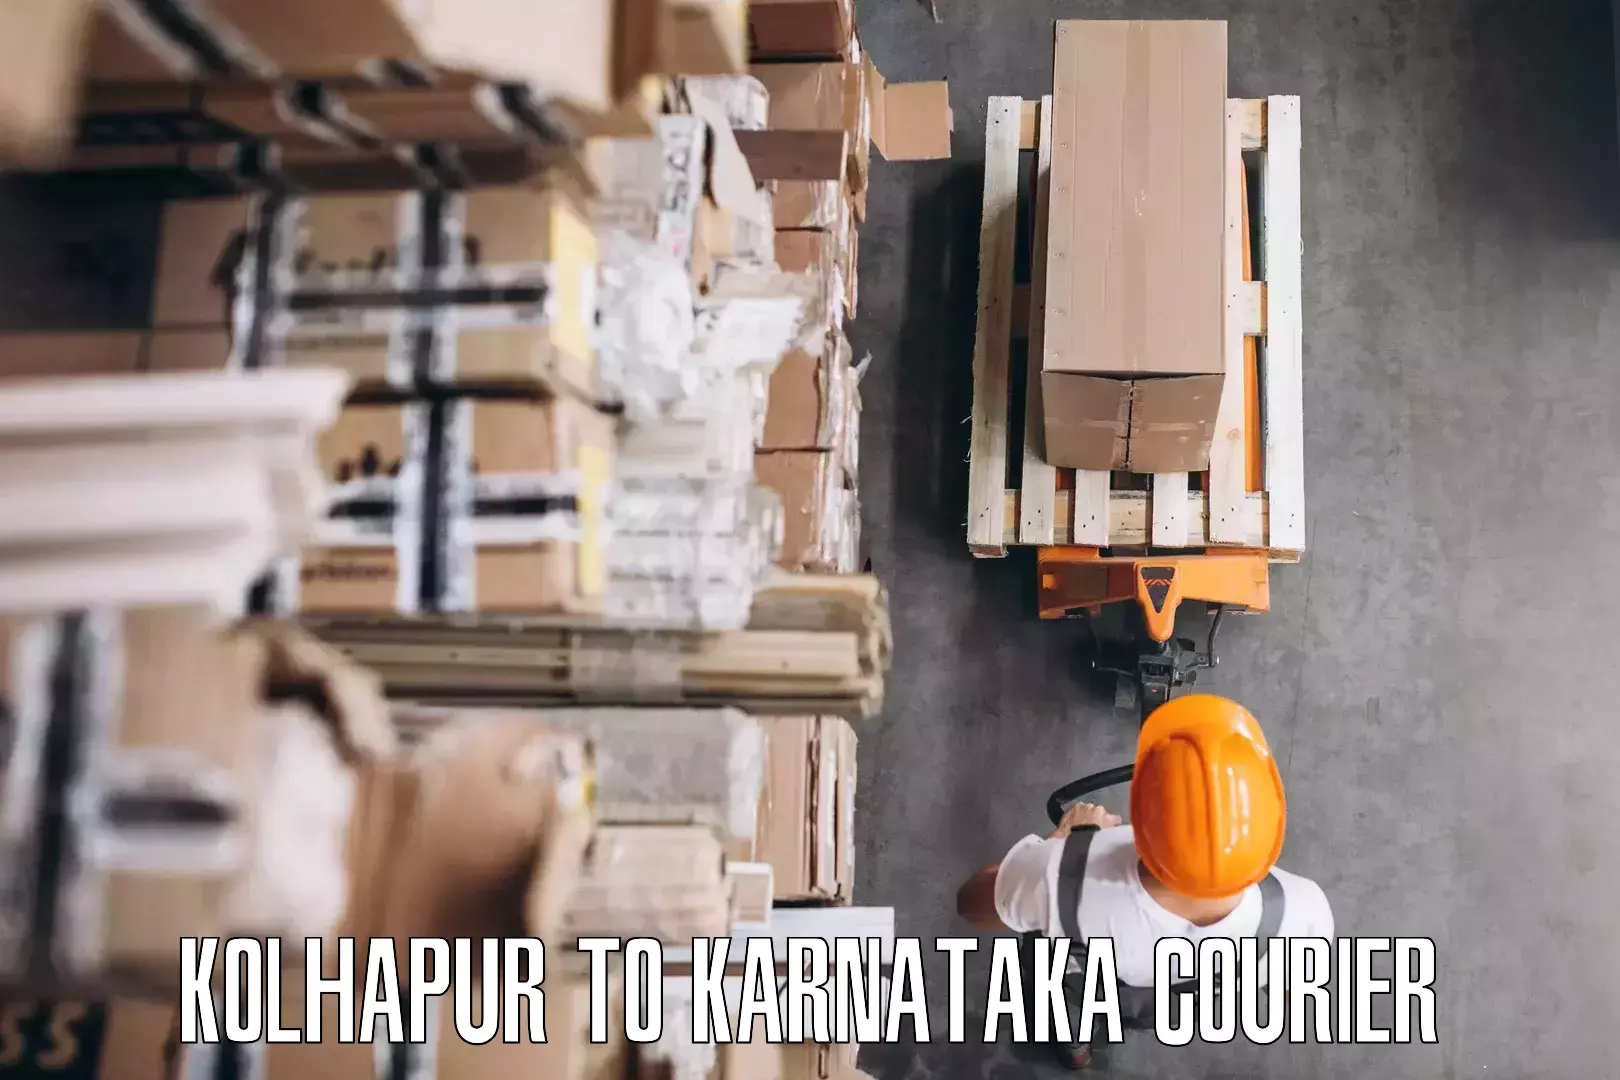 Efficient packing services Kolhapur to Karnataka